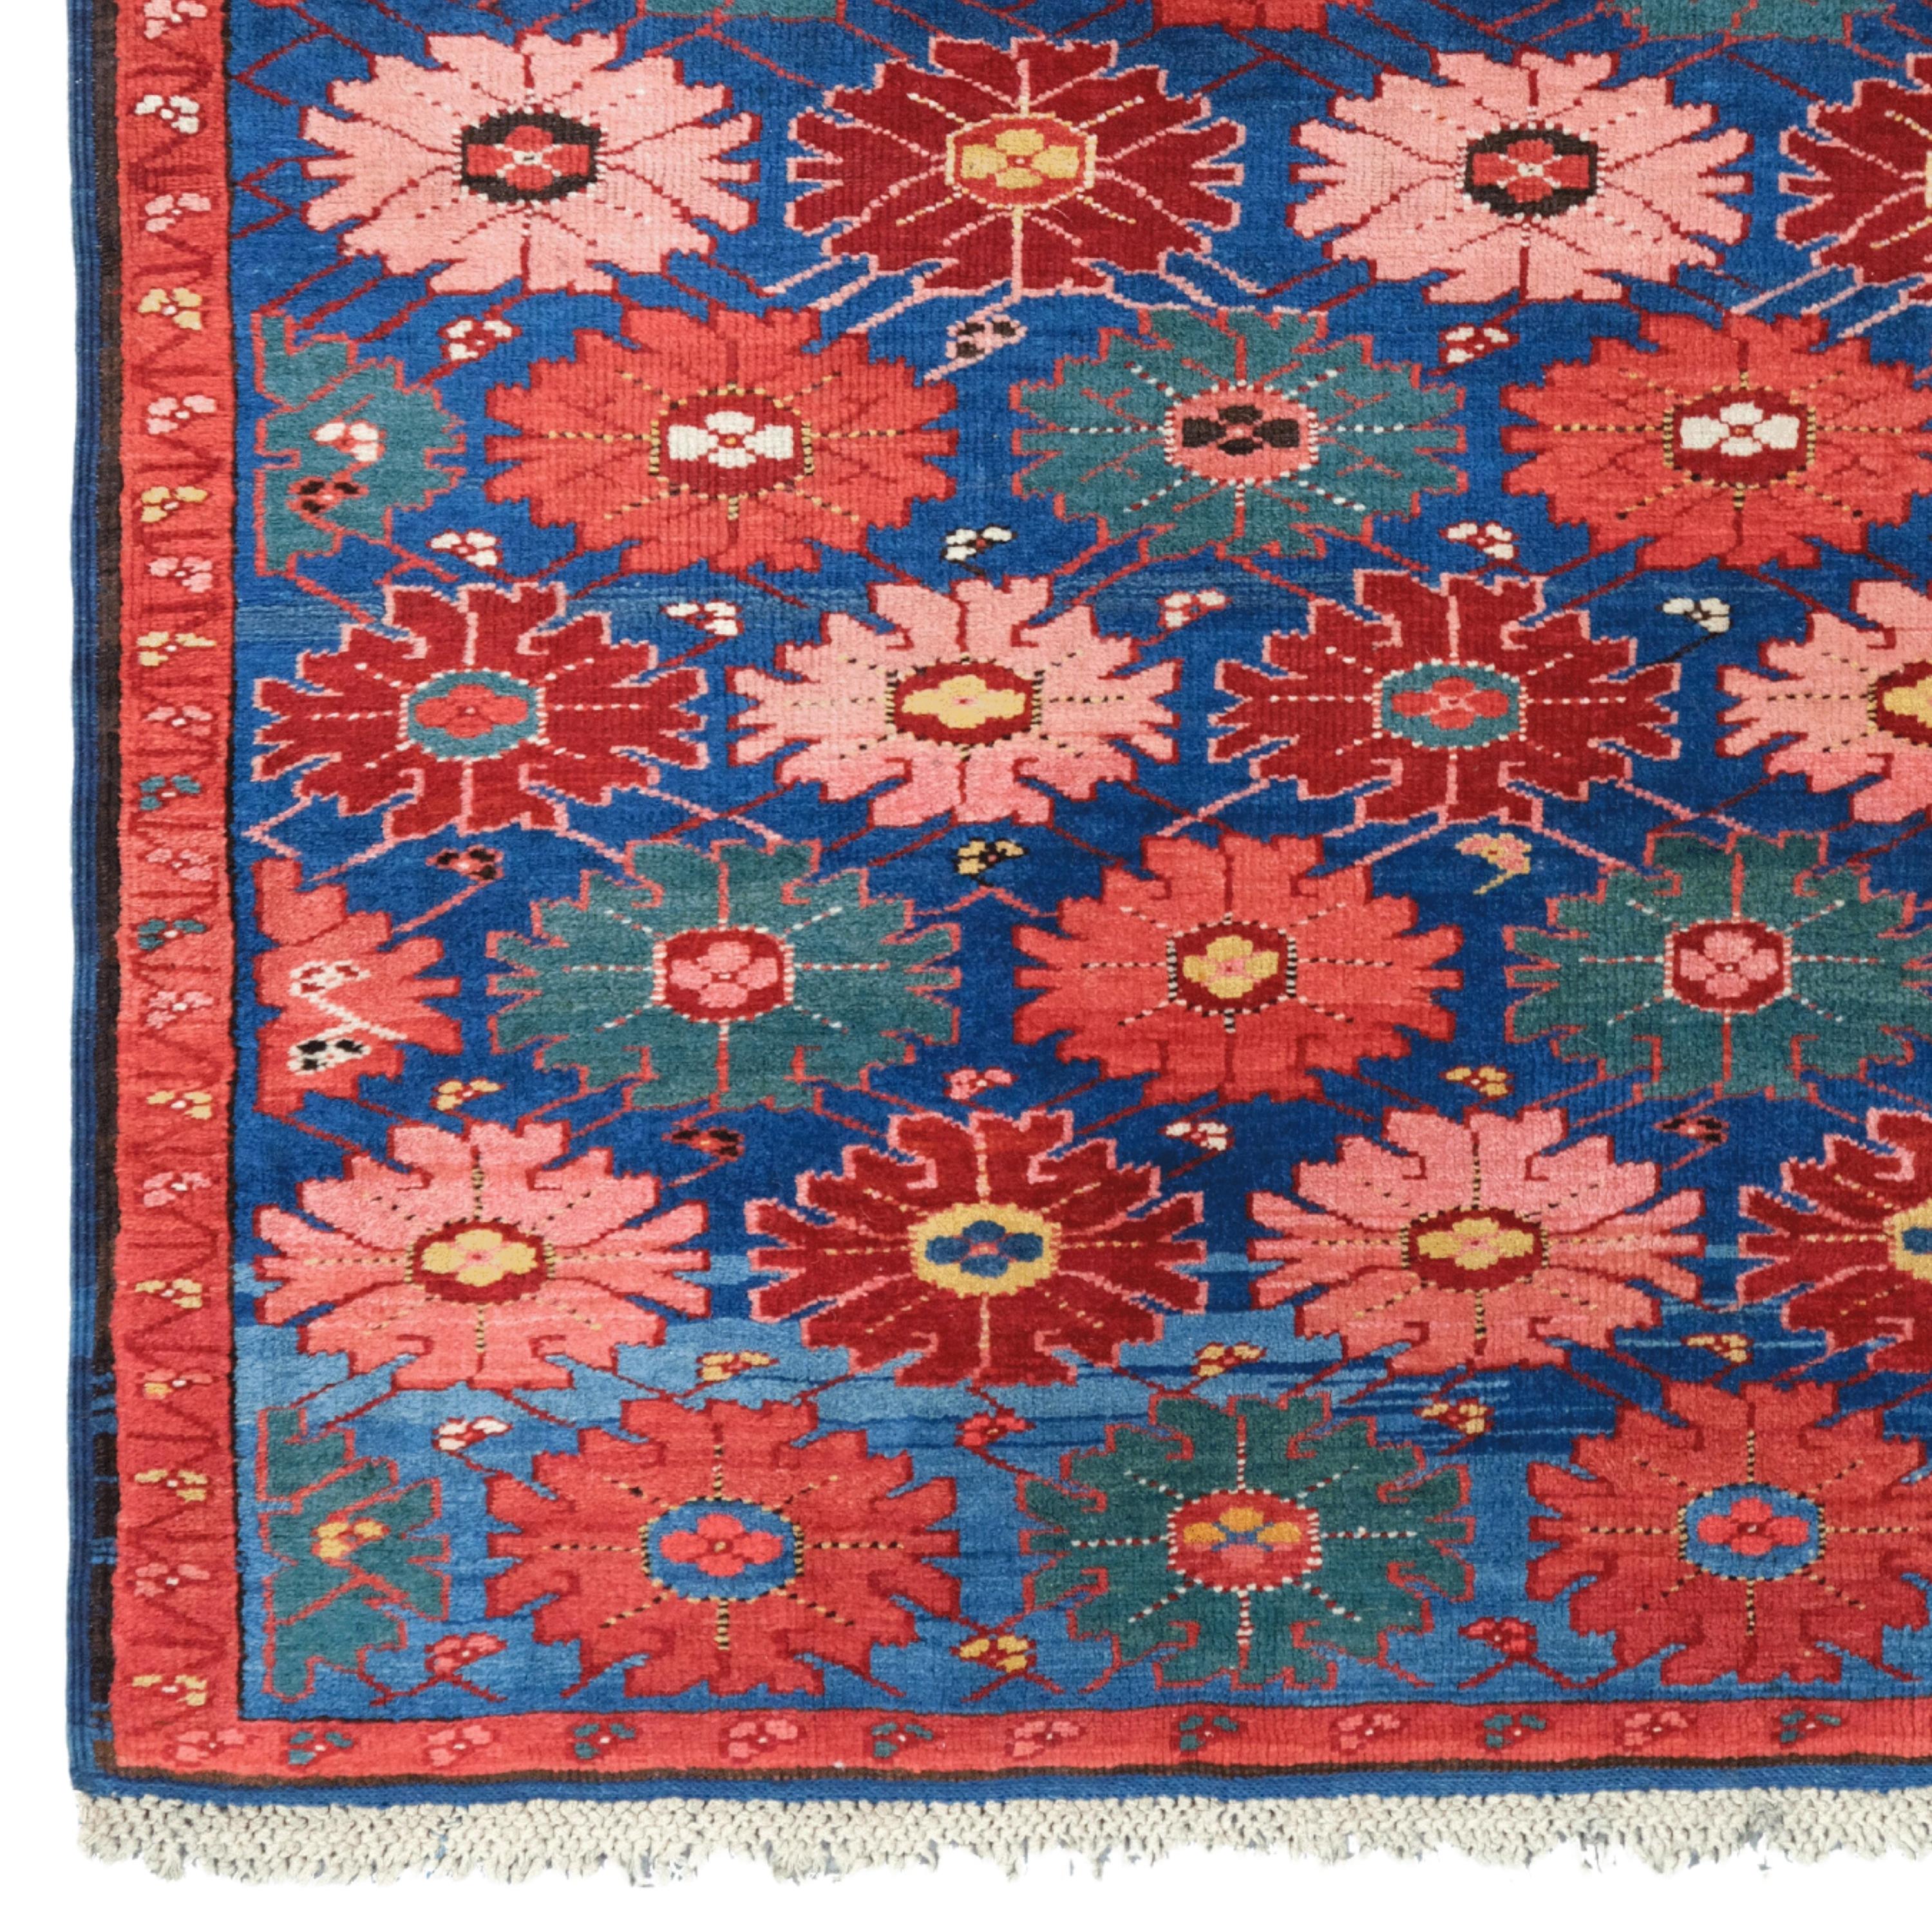 Kaukasischer Seichour-Teppich aus dem 19.
Größe: 120x190 cm

Dieser beeindruckende kaukasische Seichour-Wandteppich aus dem 19. Jahrhundert ist ein Meisterwerk, das die elegante und anspruchsvolle Handwerkskunst einer historischen Epoche